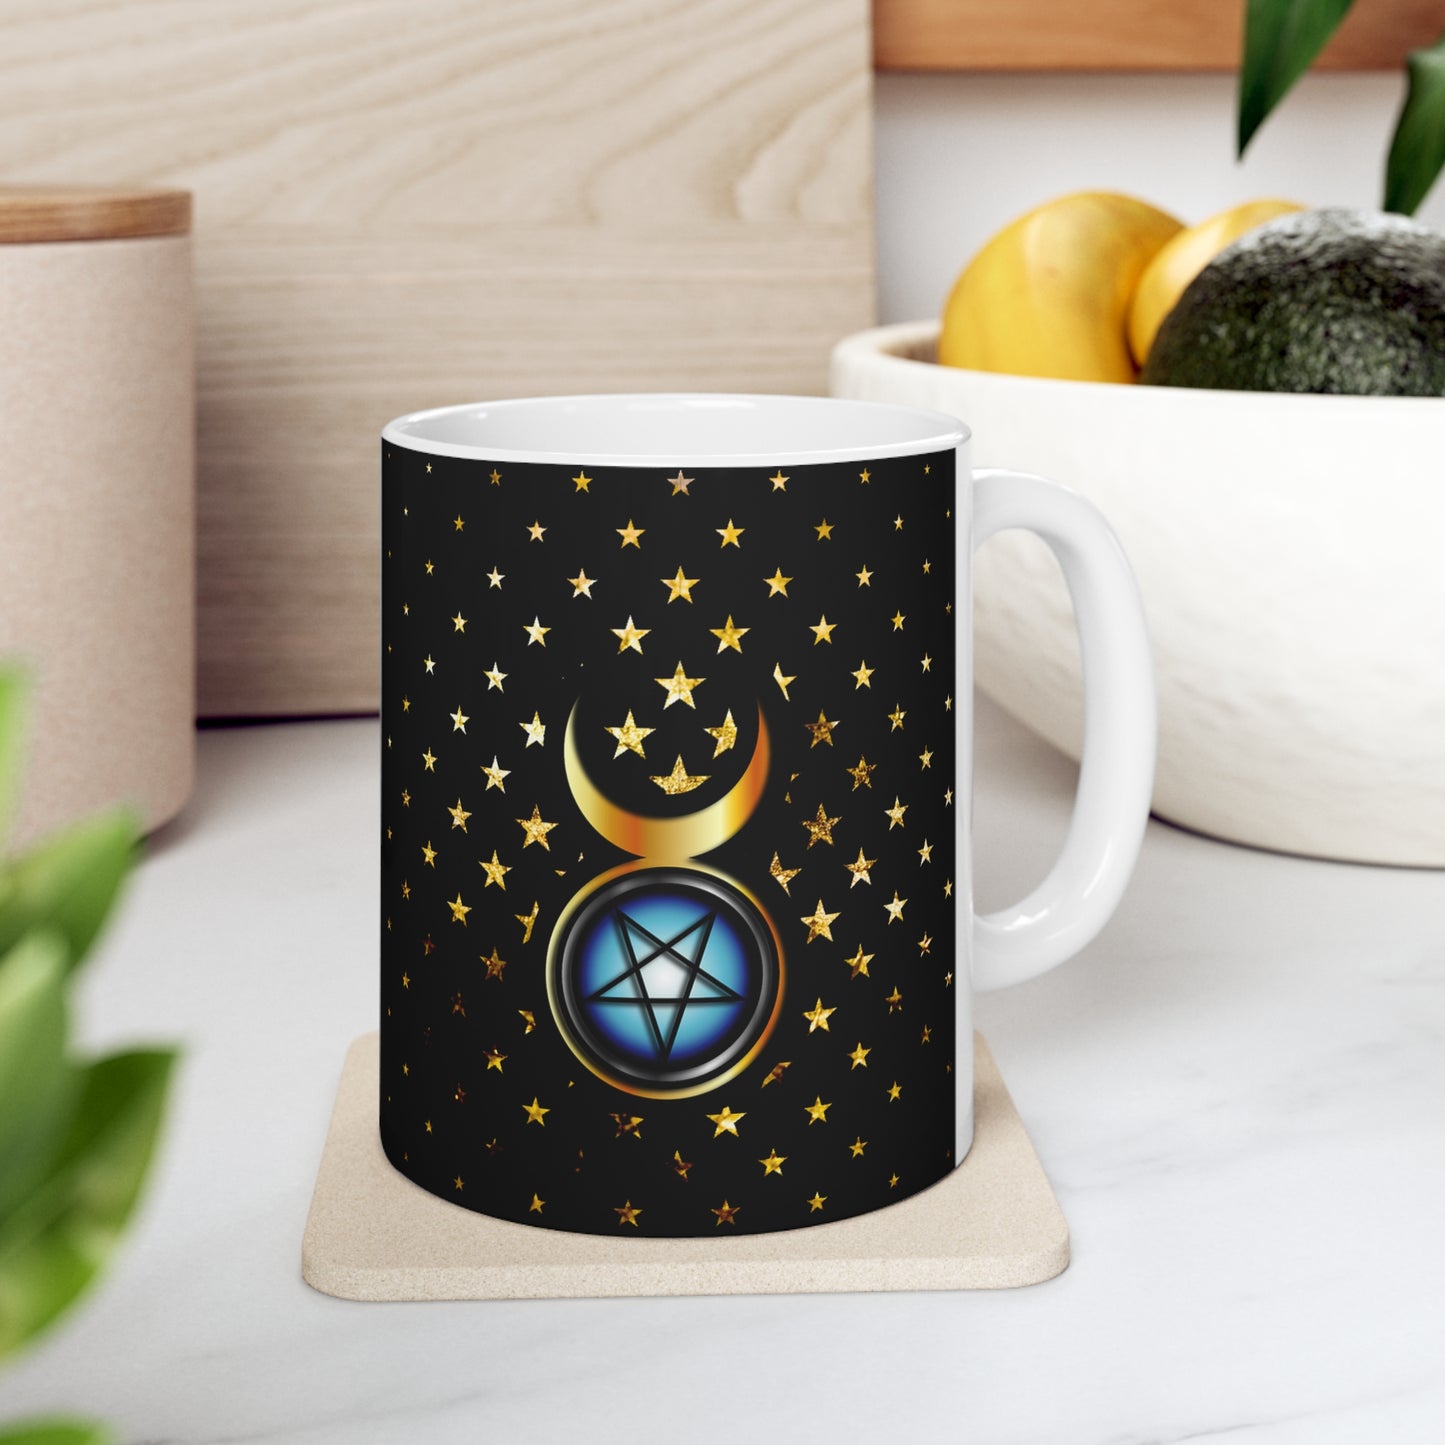 Celestial Ceramic Mug 11oz